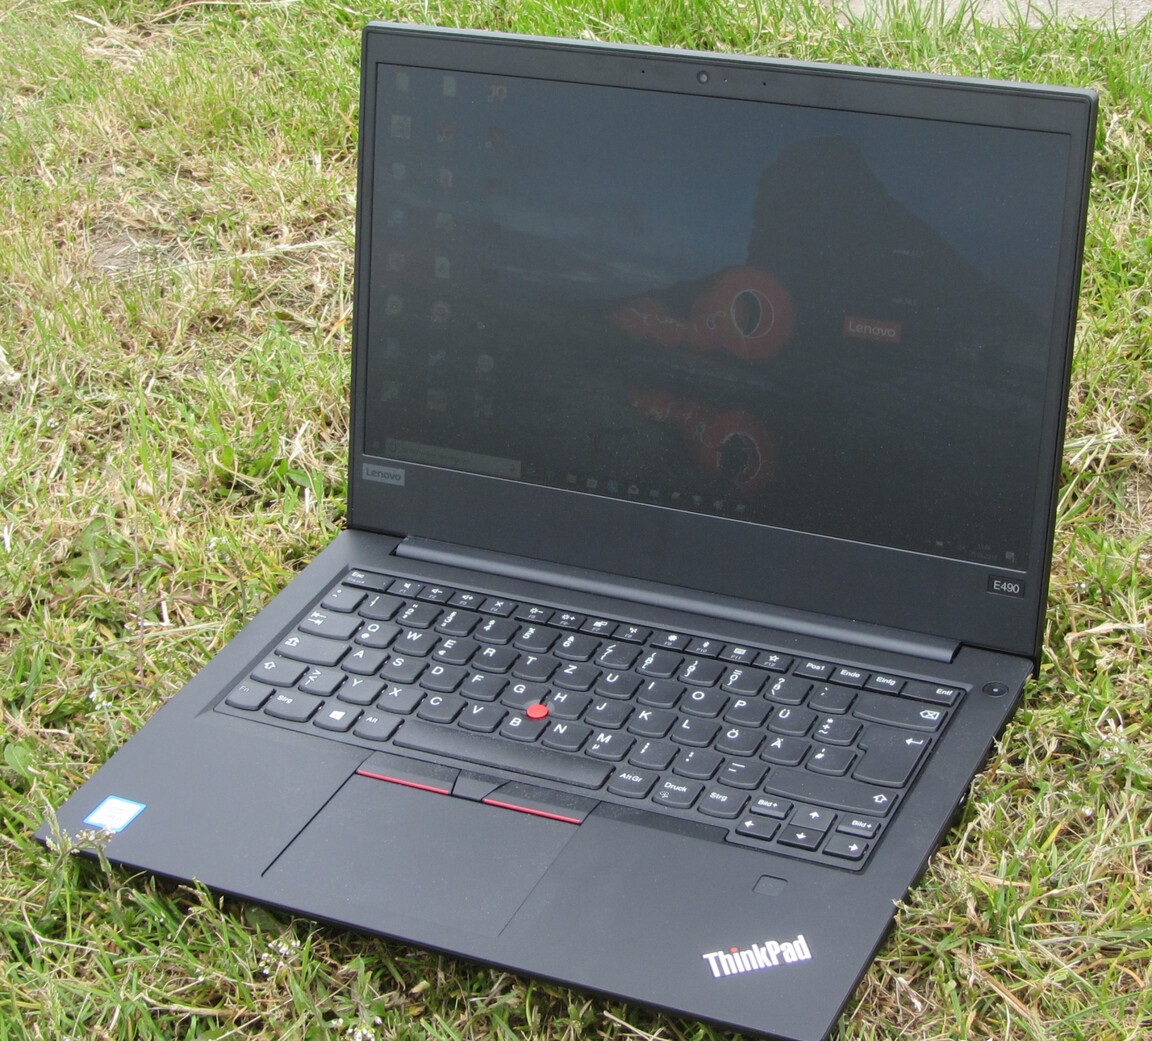 Đánh giá laptop Lenovo Thinkpad E490: Giá / hiệu năng cực tốt, Chuyên trang tư vấn laptop